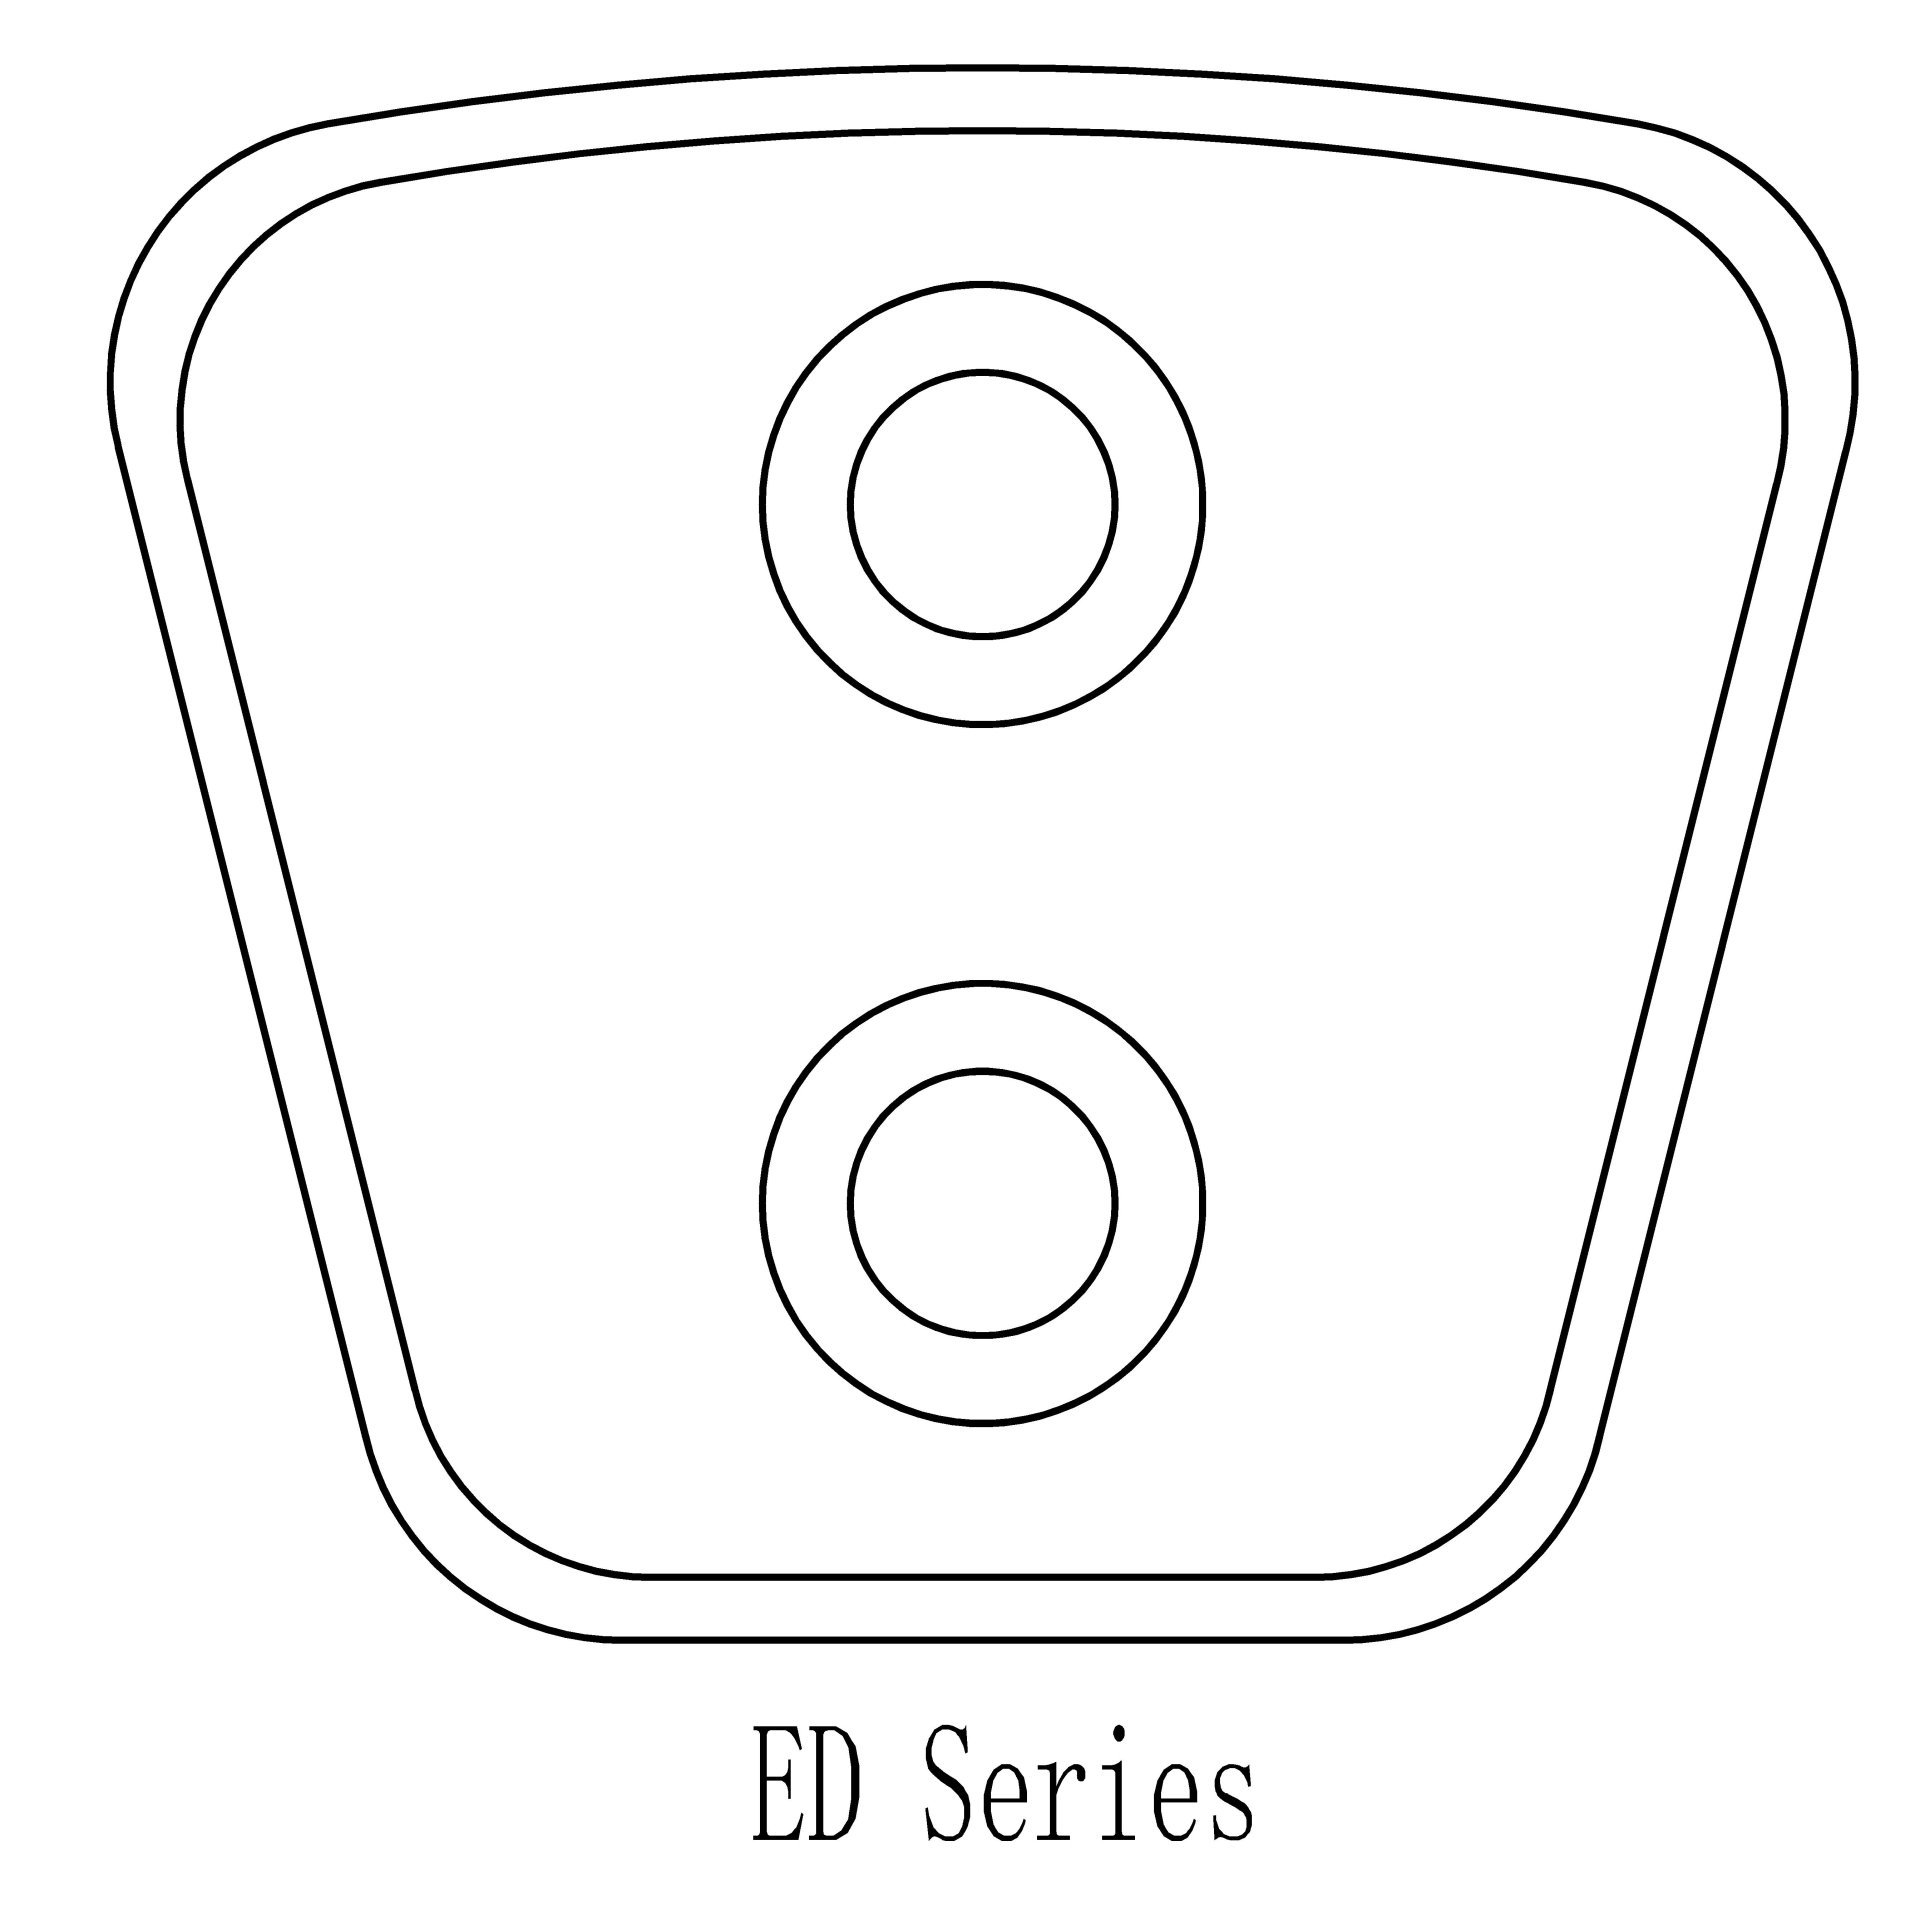 ED series